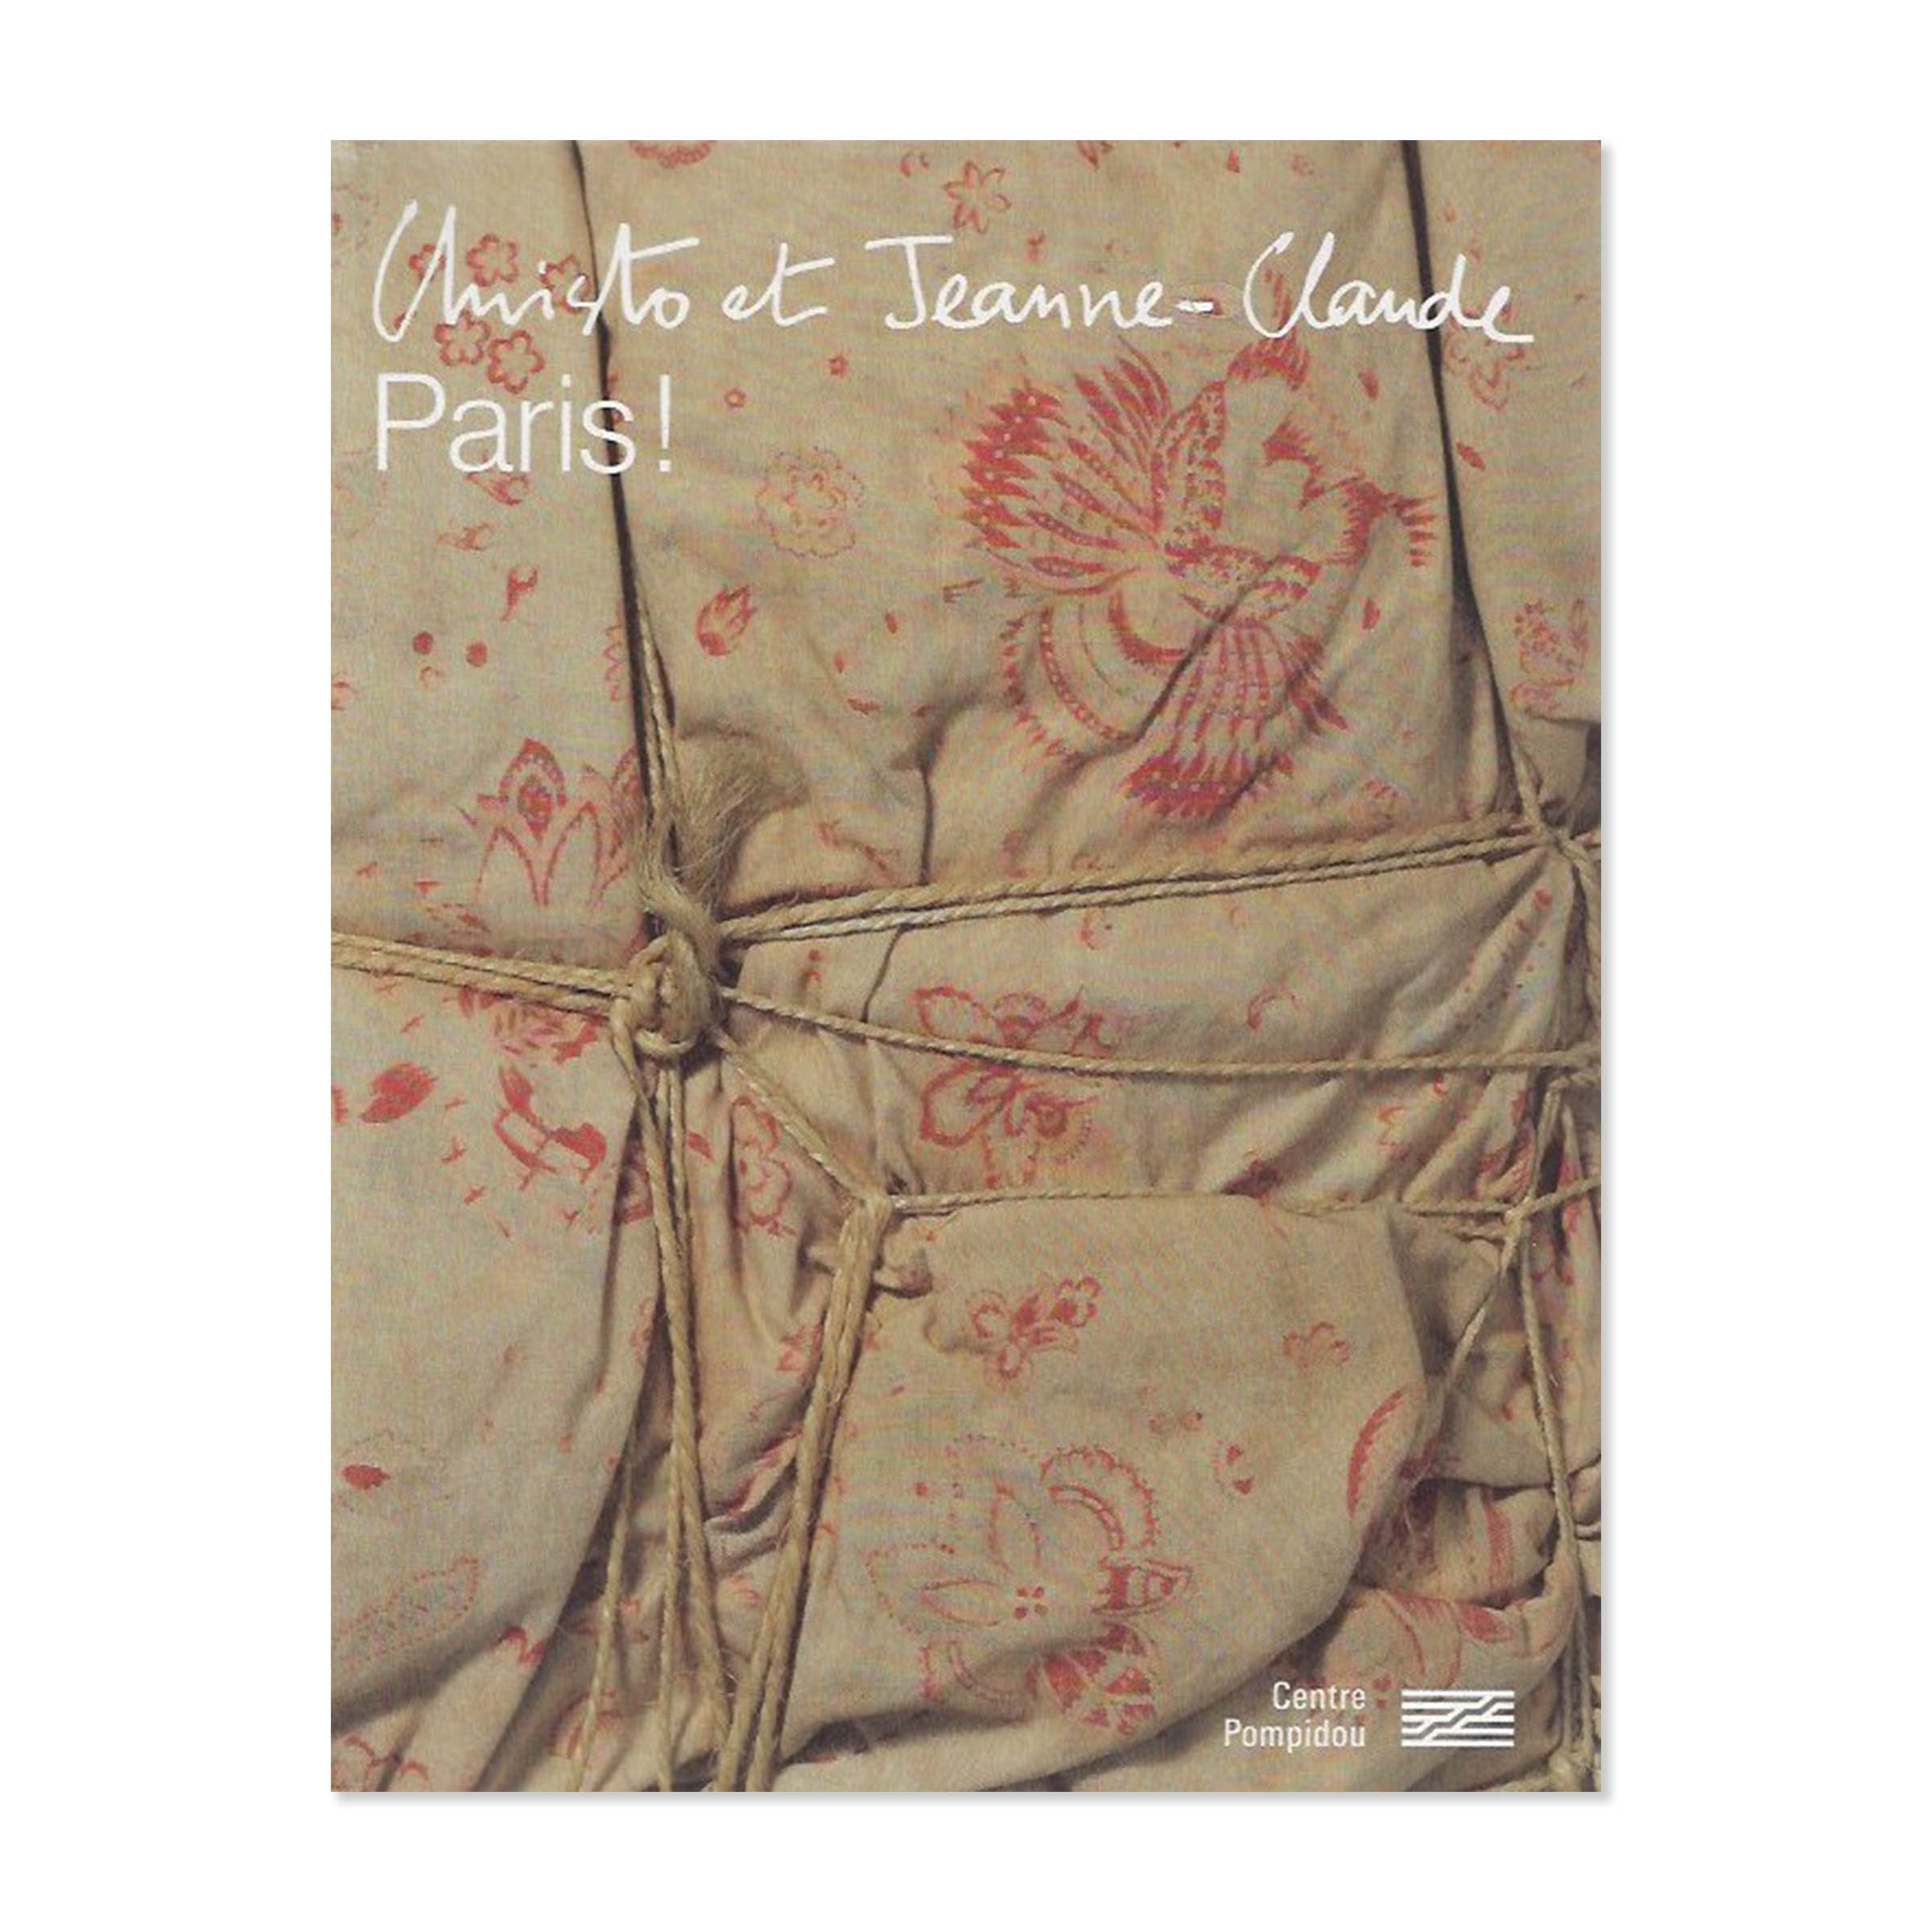 Christo et Jeanne Claude. Paris. Cover view